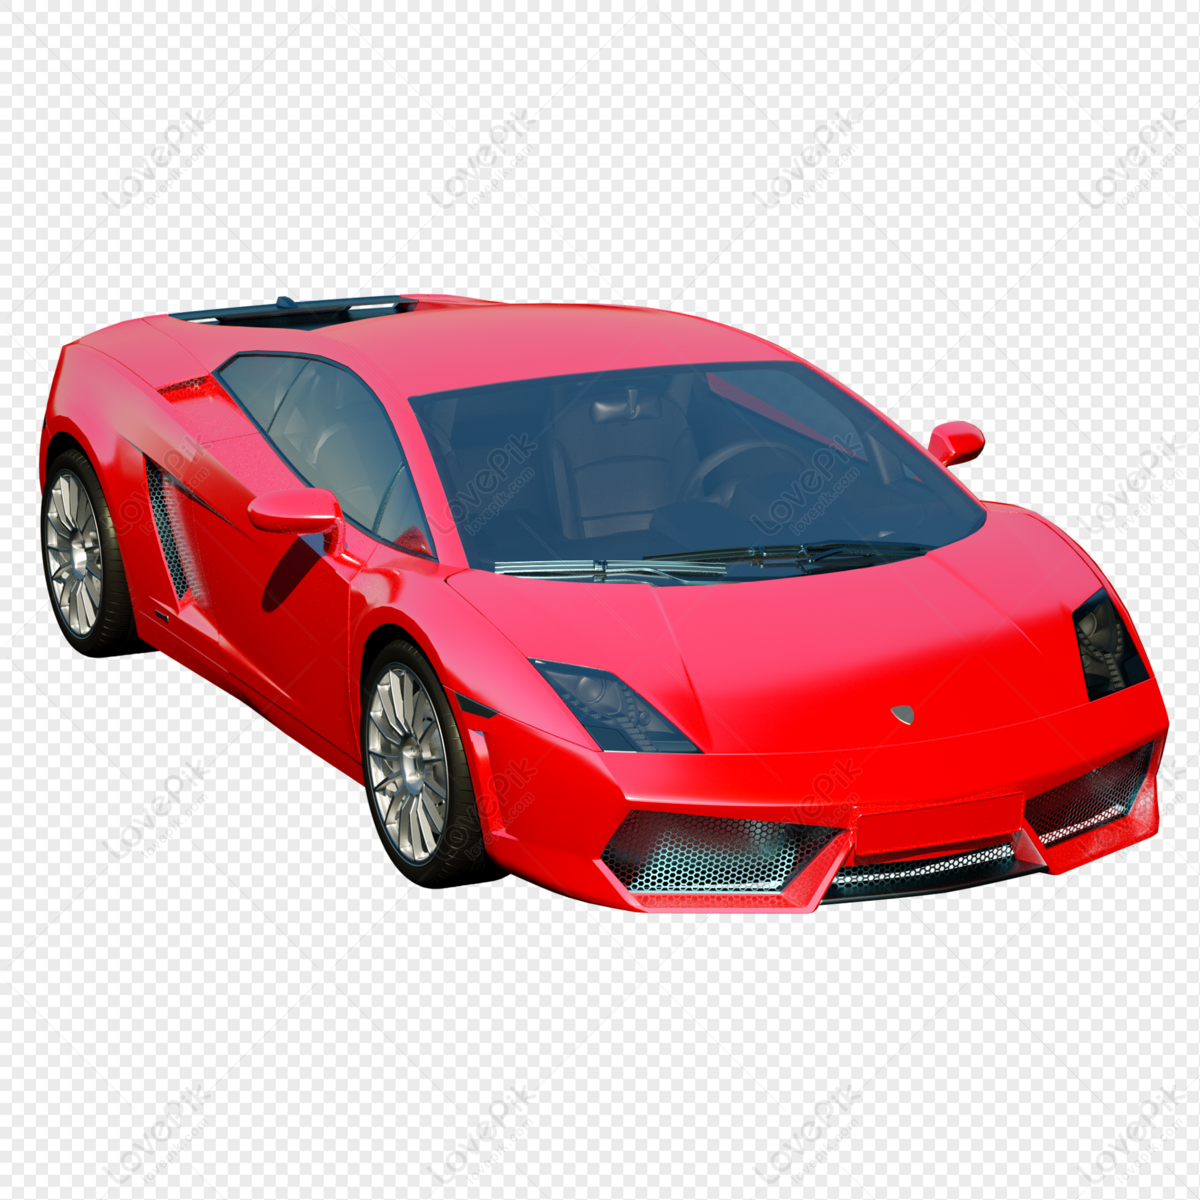 Mô hình xe 3D là một trong những sản phẩm rất thú vị để các tín đồ sưu tầm. Chúng mang lại hình ảnh rõ ràng, chi tiết và chân thực về chiếc xe mà bạn yêu thích. Xem thêm hình ảnh liên quan để tìm hiểu về đồ chơi này.